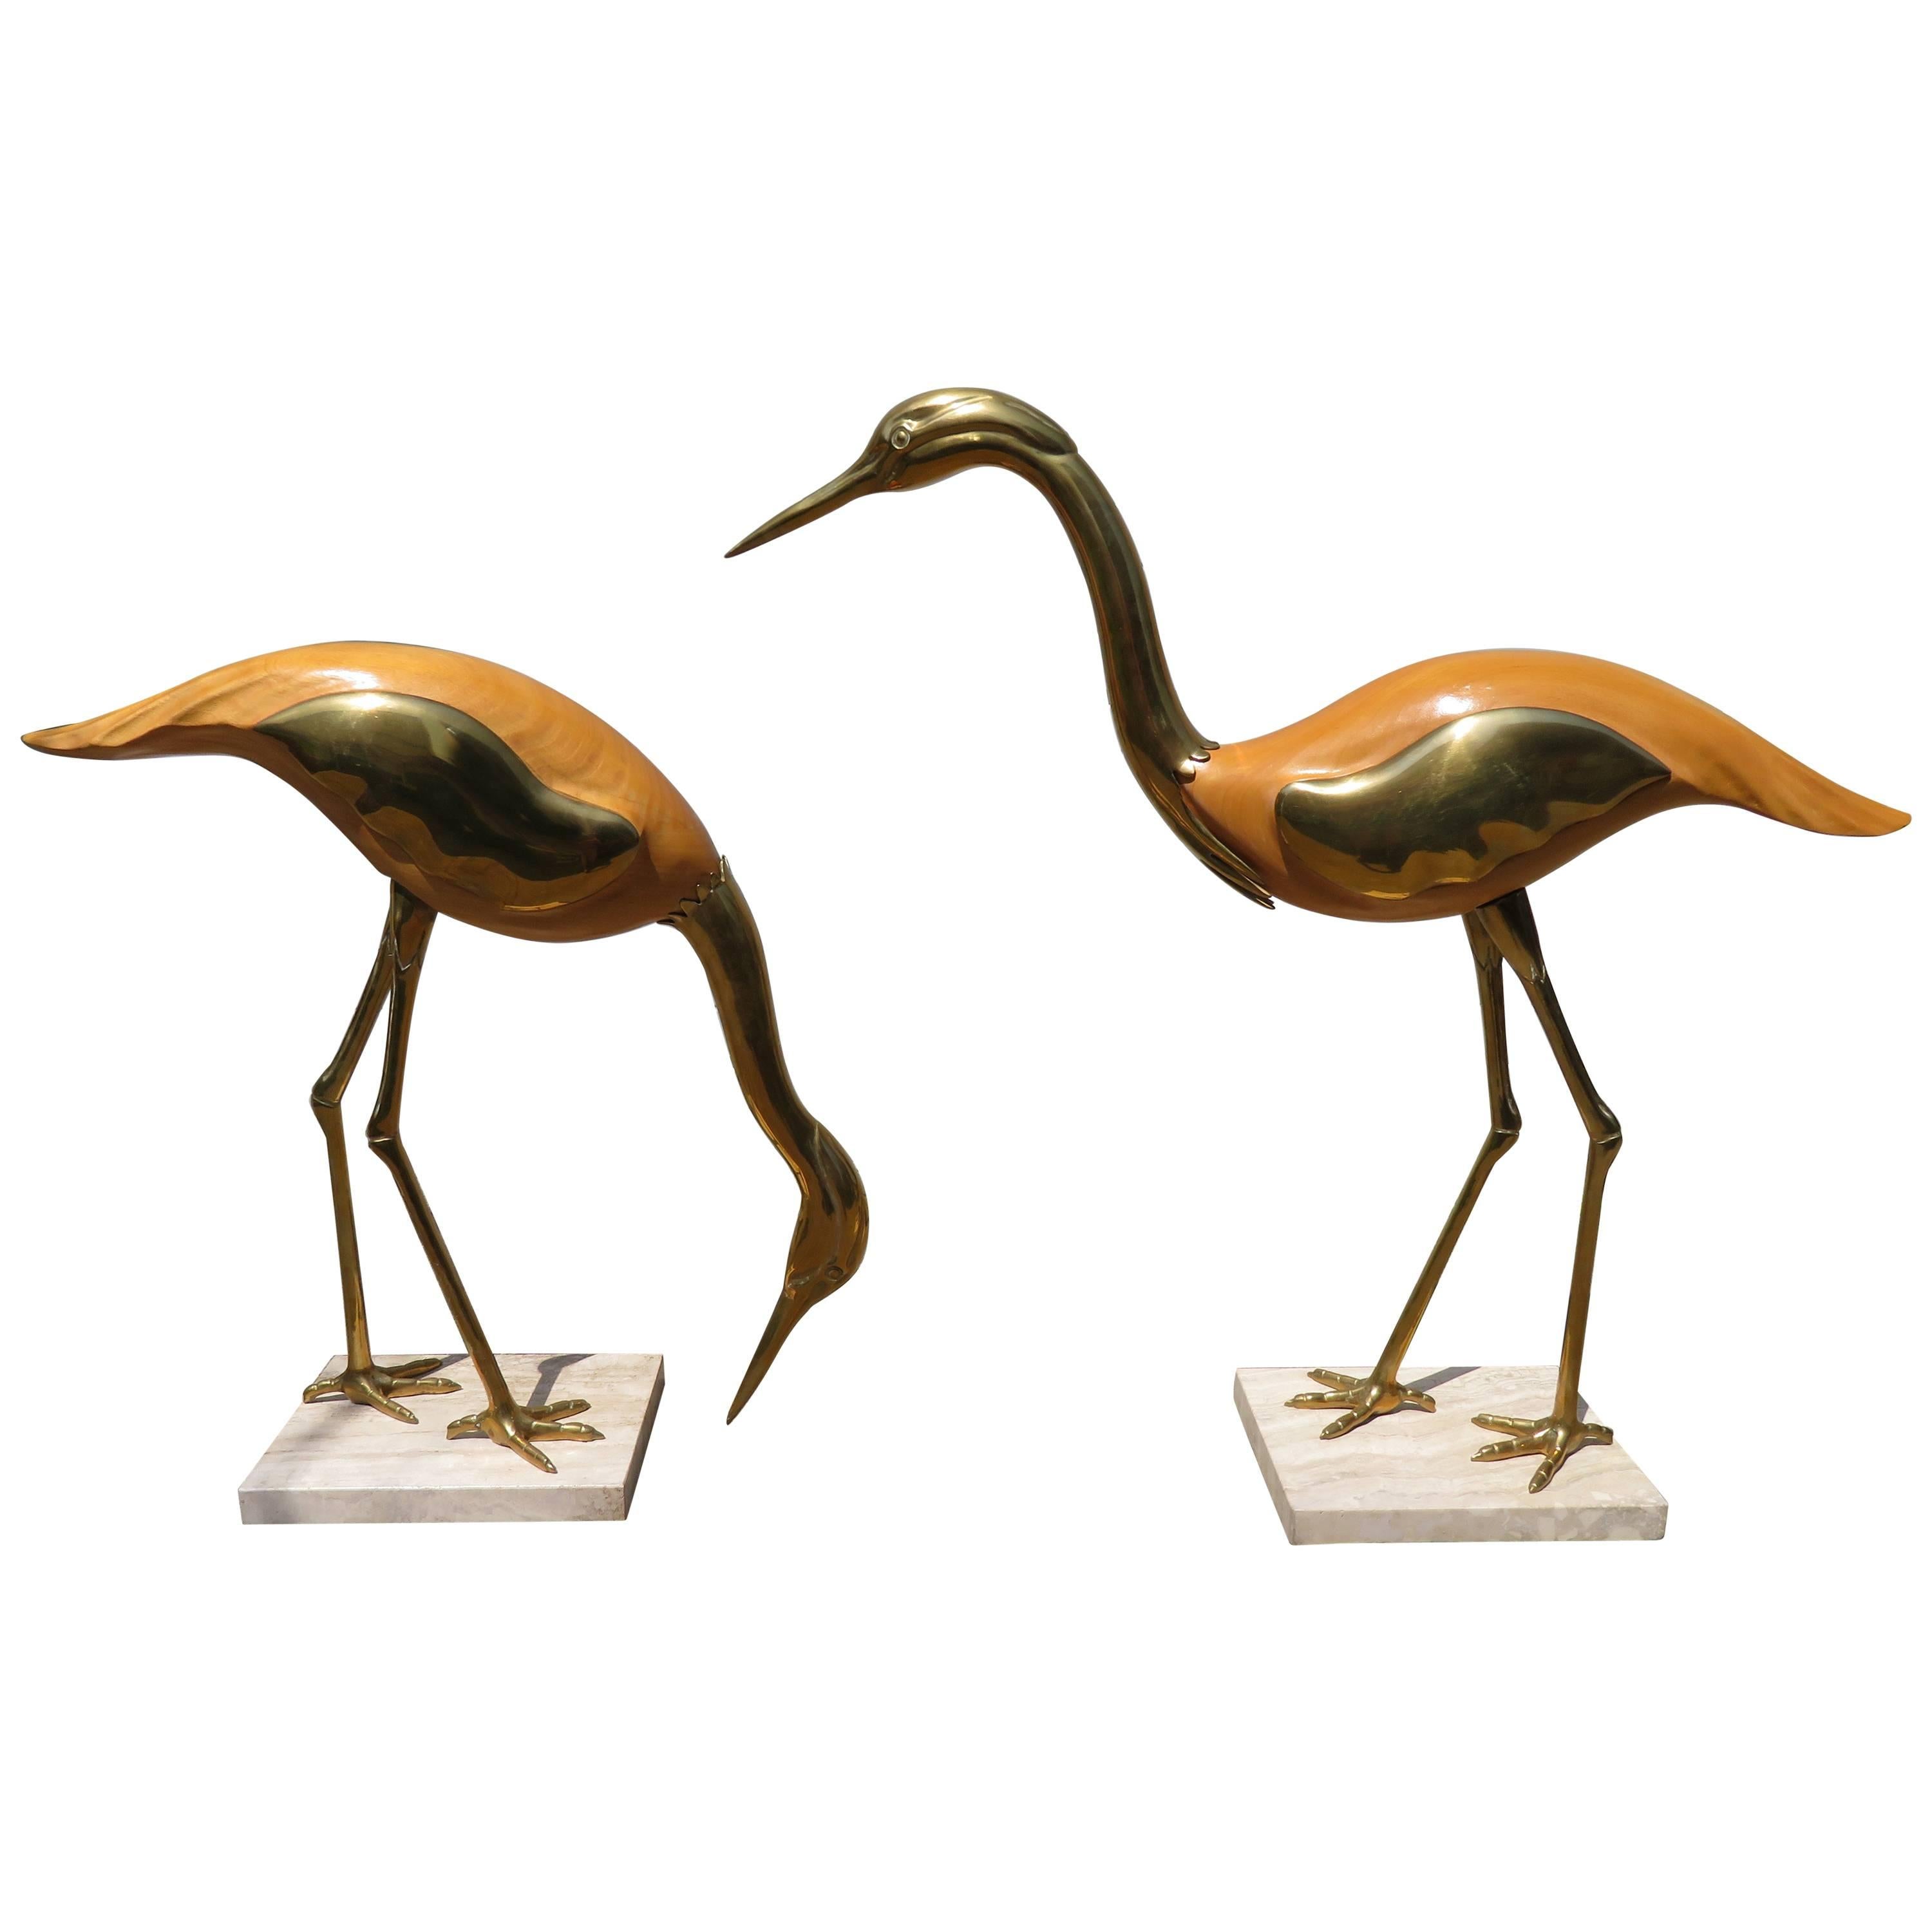 Magnifique paire de grandes grues d'égrets italiennes en travertin de style Antonio Pavia